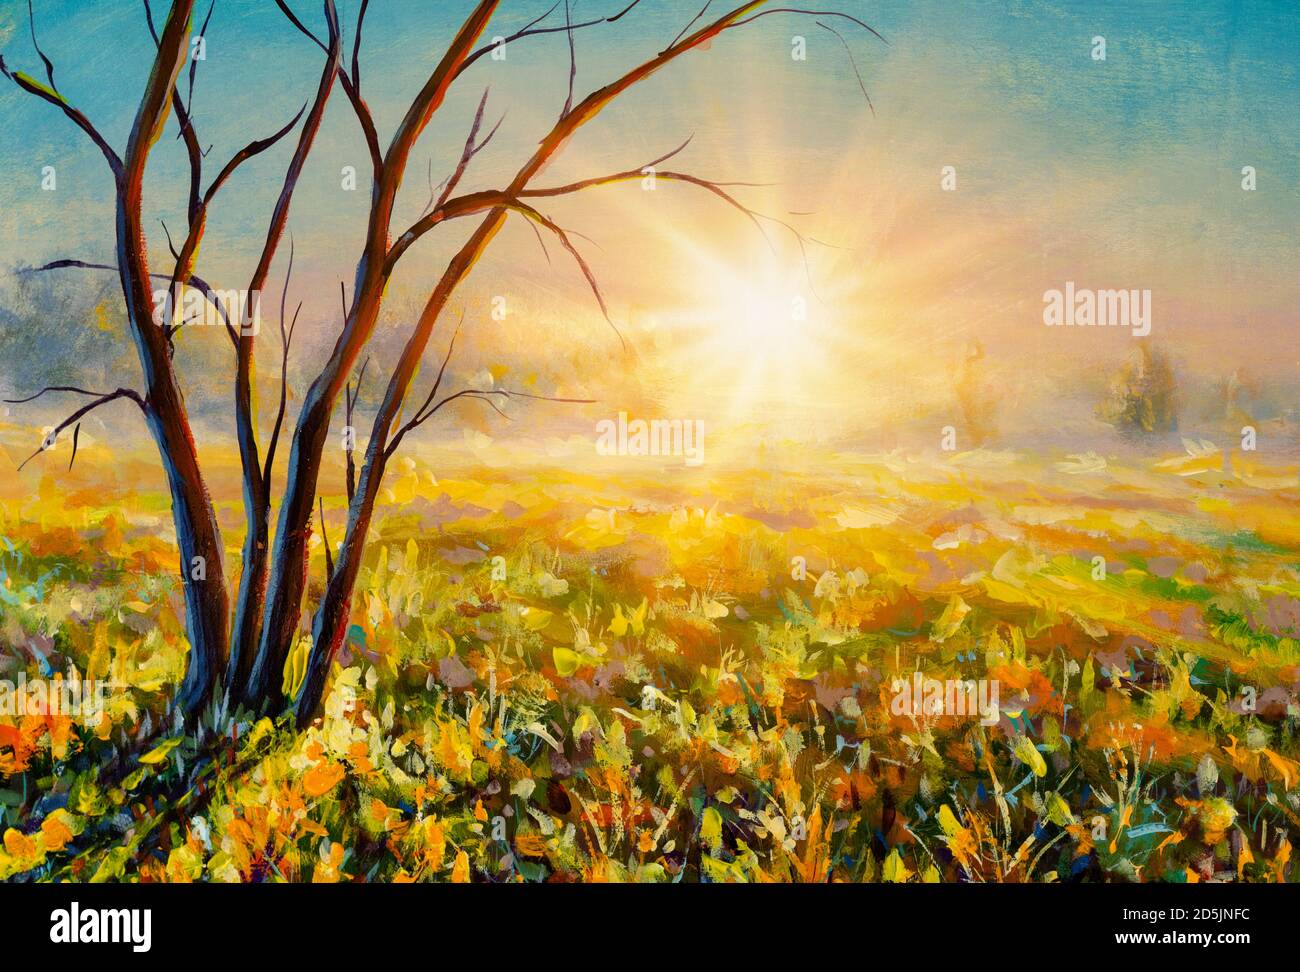 Original Ölgemälde von nebligen Morgen Sonnenaufgang Sonnenuntergang in  Wiese Feld auf Leinwand. Moderner Impressionismus.Impasto Kunstwerk  Stockfotografie - Alamy